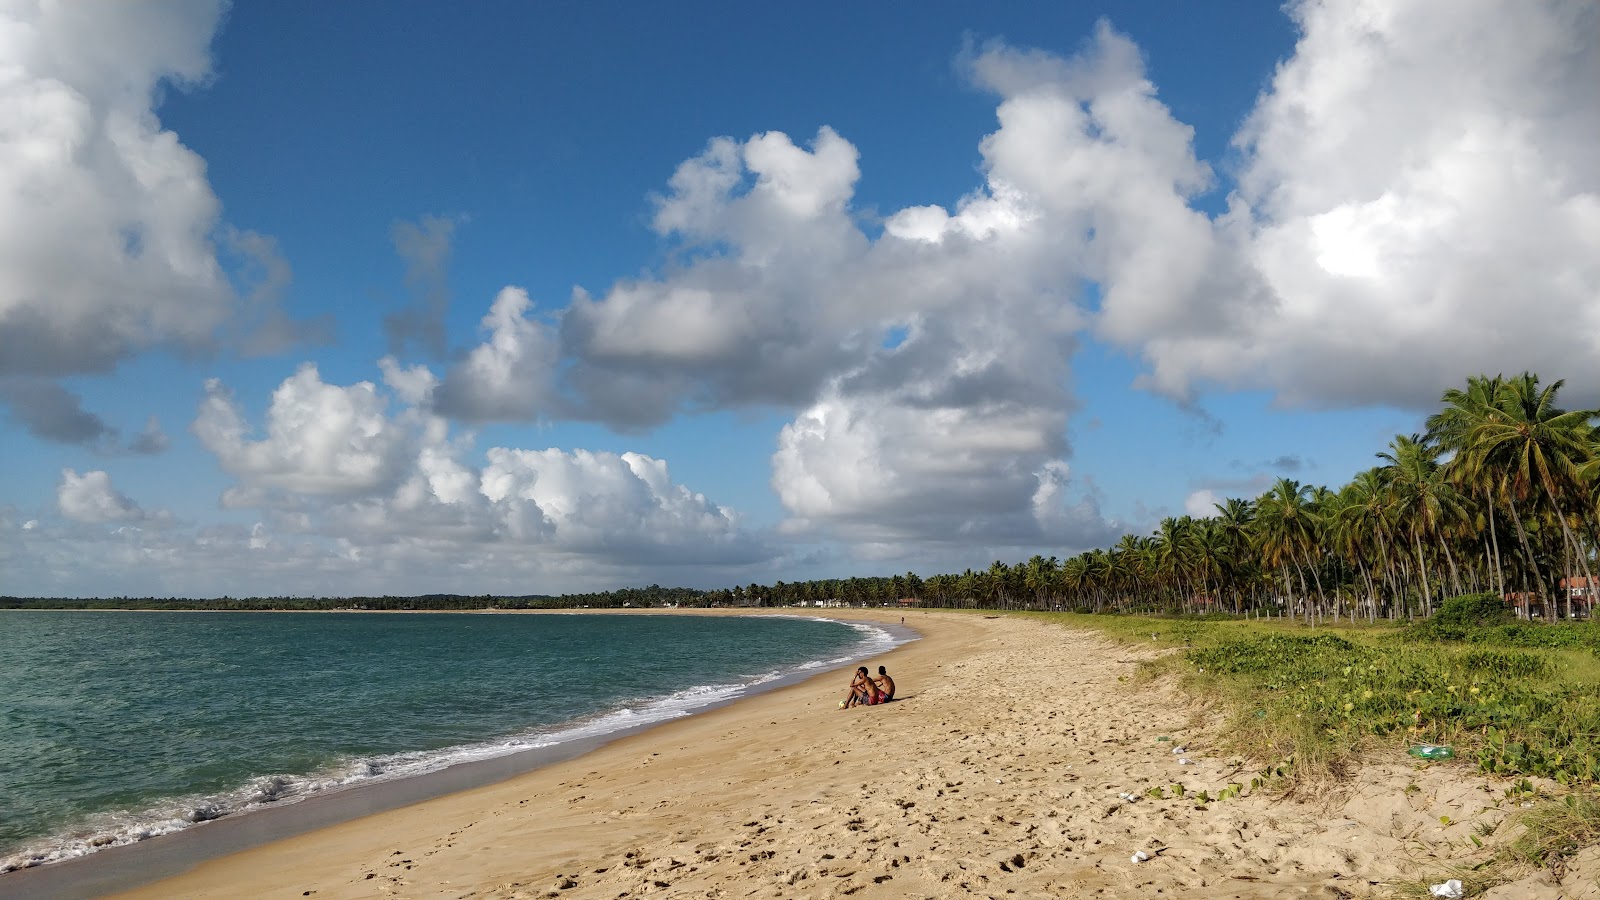 Fotografie cu Praia Pontal do Lira cu o suprafață de nisip fin strălucitor